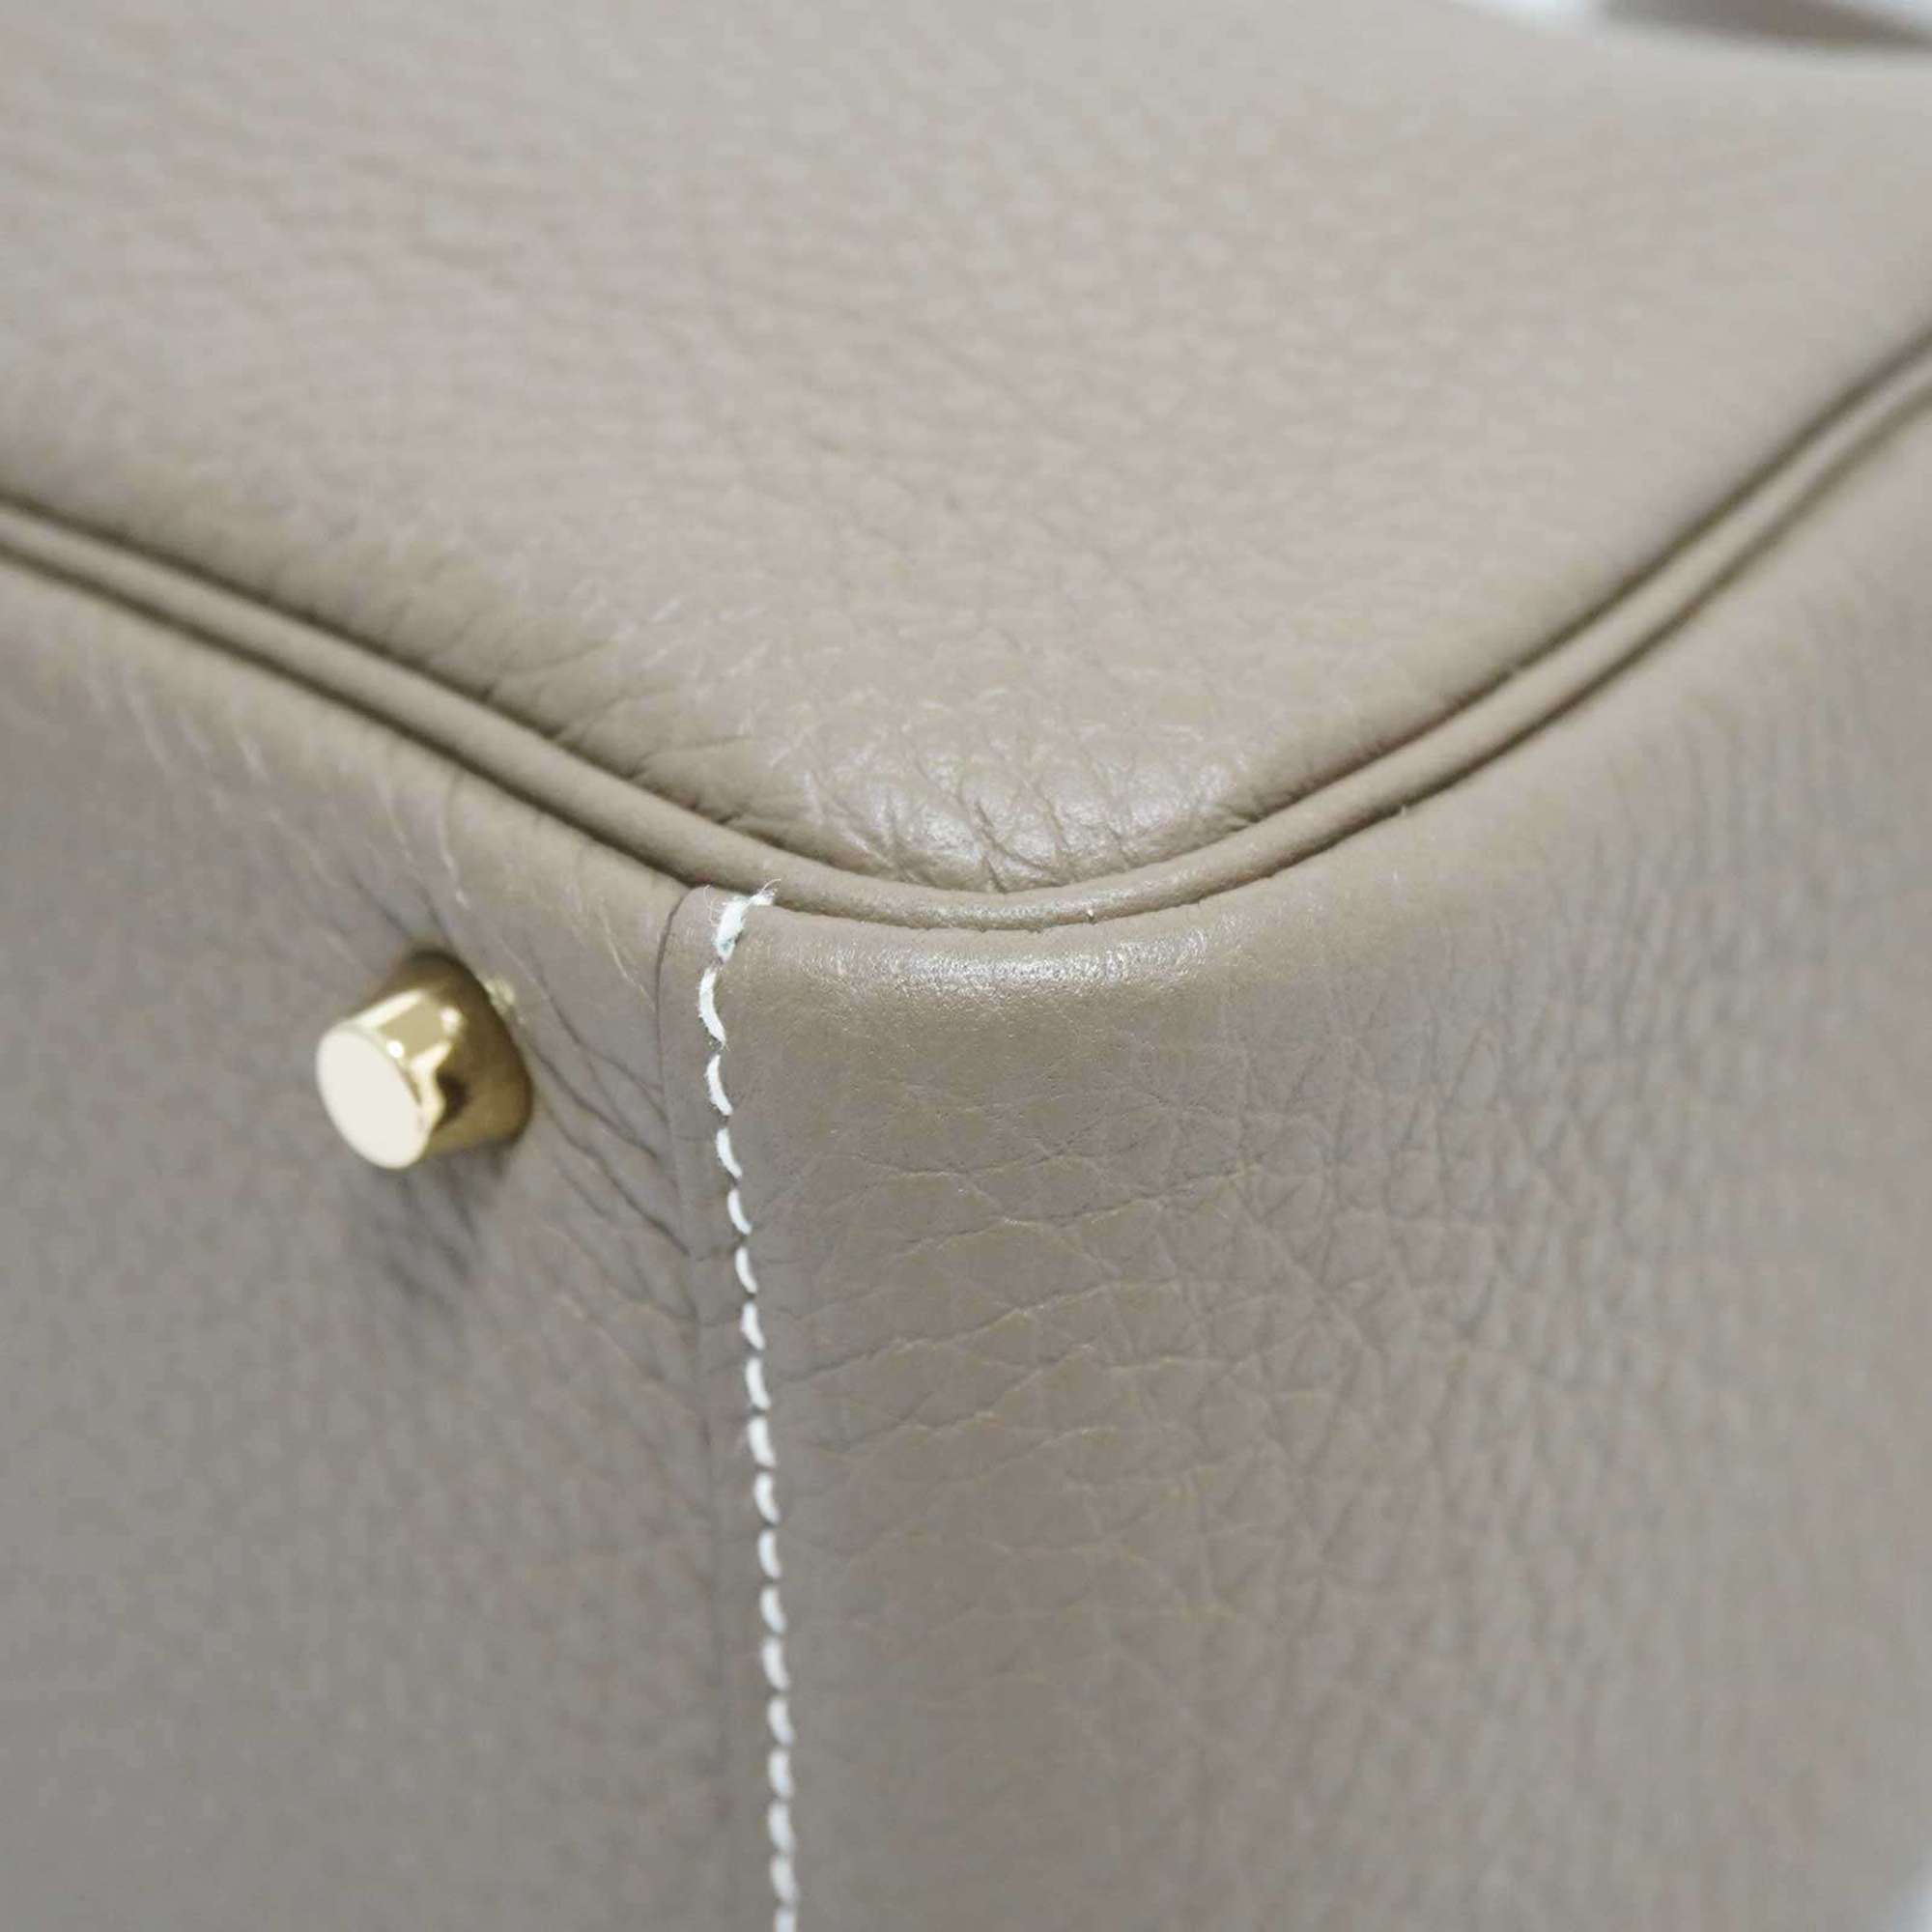 HERMES Lindy handbag shoulder bag Etoupe G hardware Taurillon U stamp Women's Men's